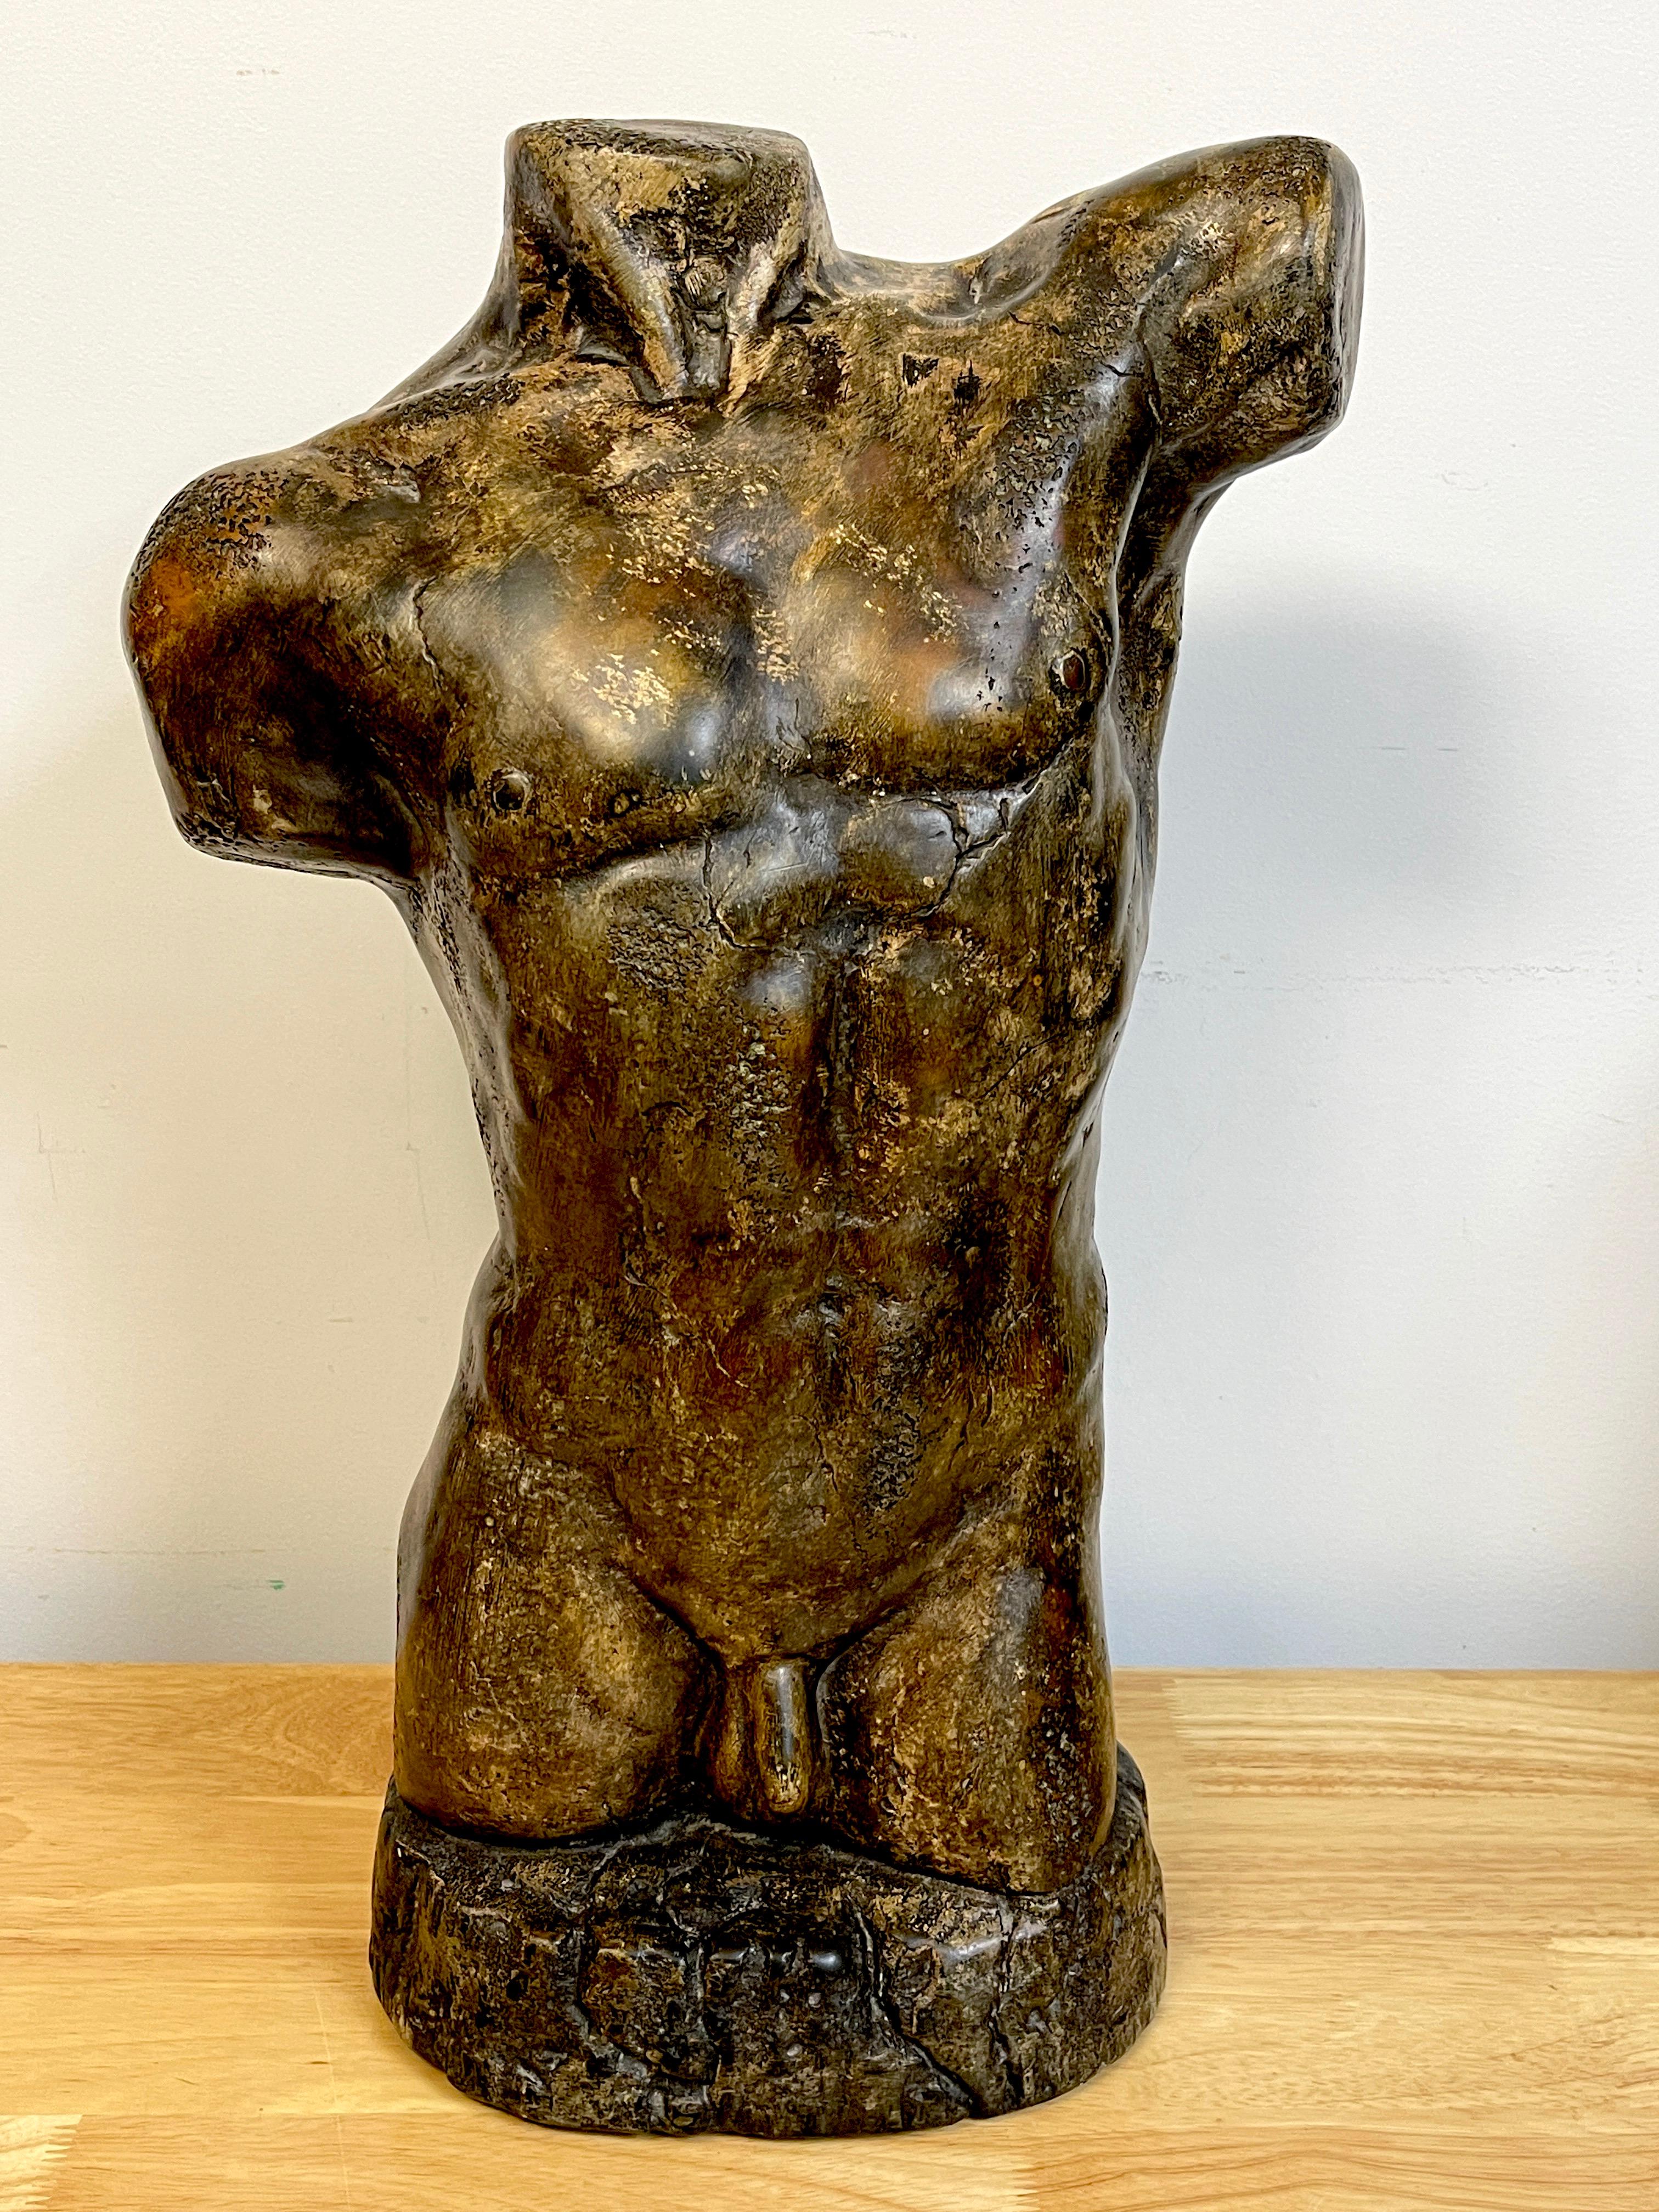 Sculpture moderne française en plâtre bronzé représentant un torse nu masculin, peut-être une maquette. Non signée.
Une sculpture audacieuse, bien modelée, avec une belle patine et une belle texture. C'est une période de travail substantielle. 
La